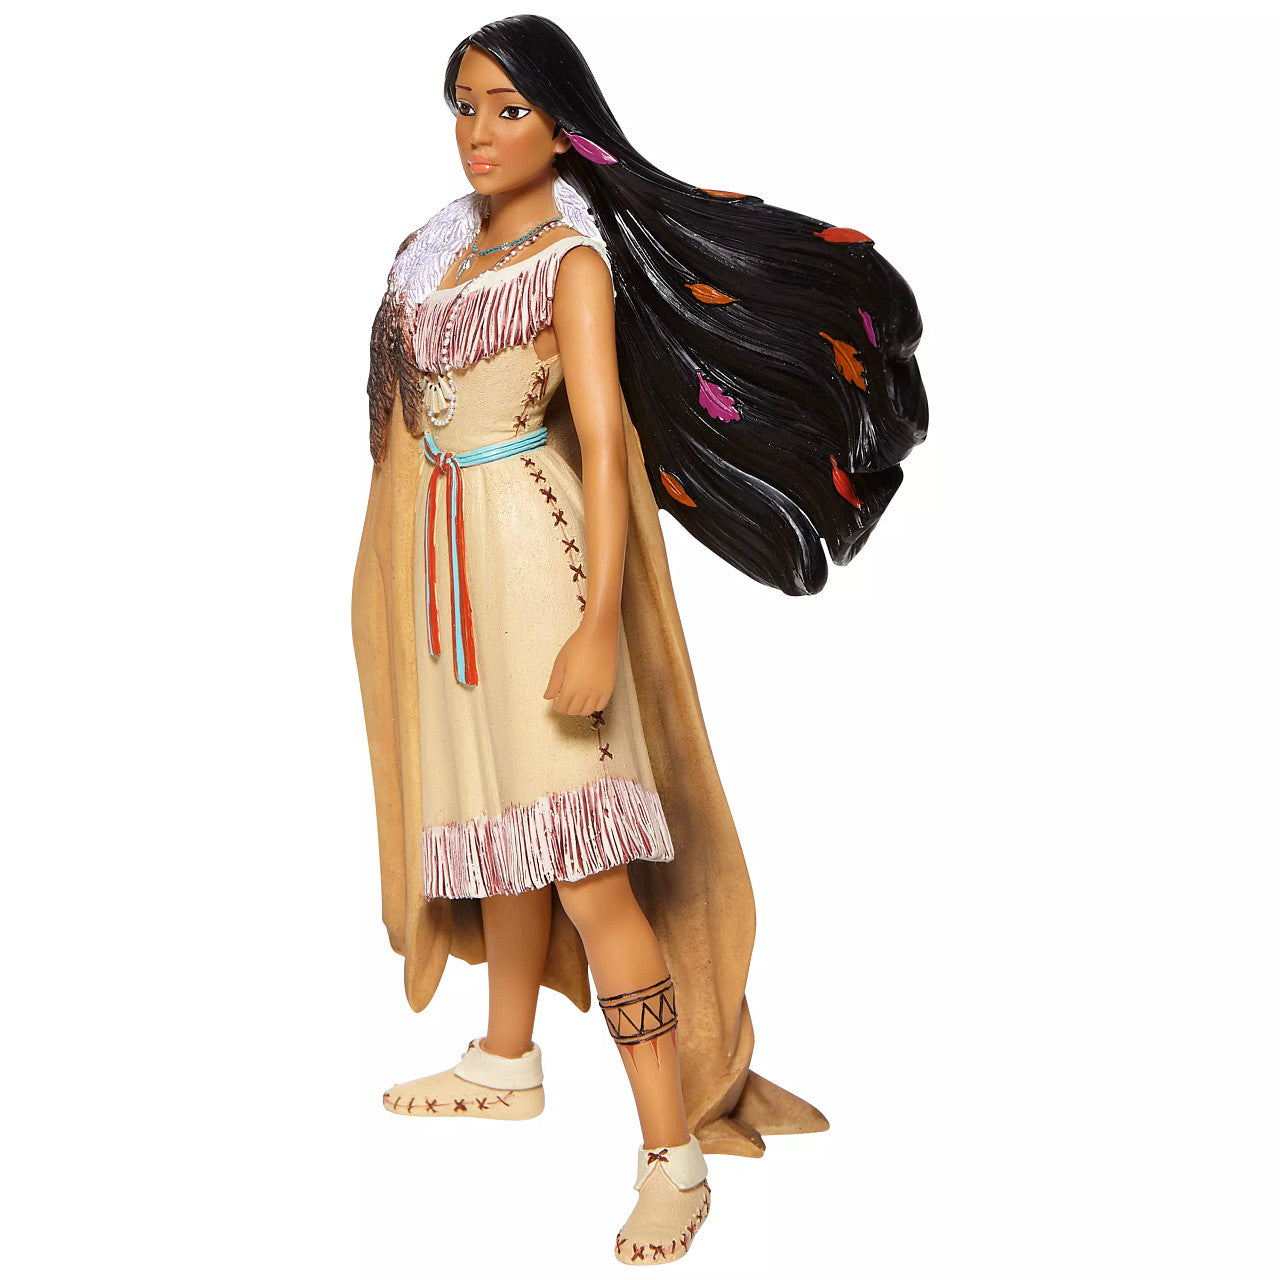 Pocahontas Figurine